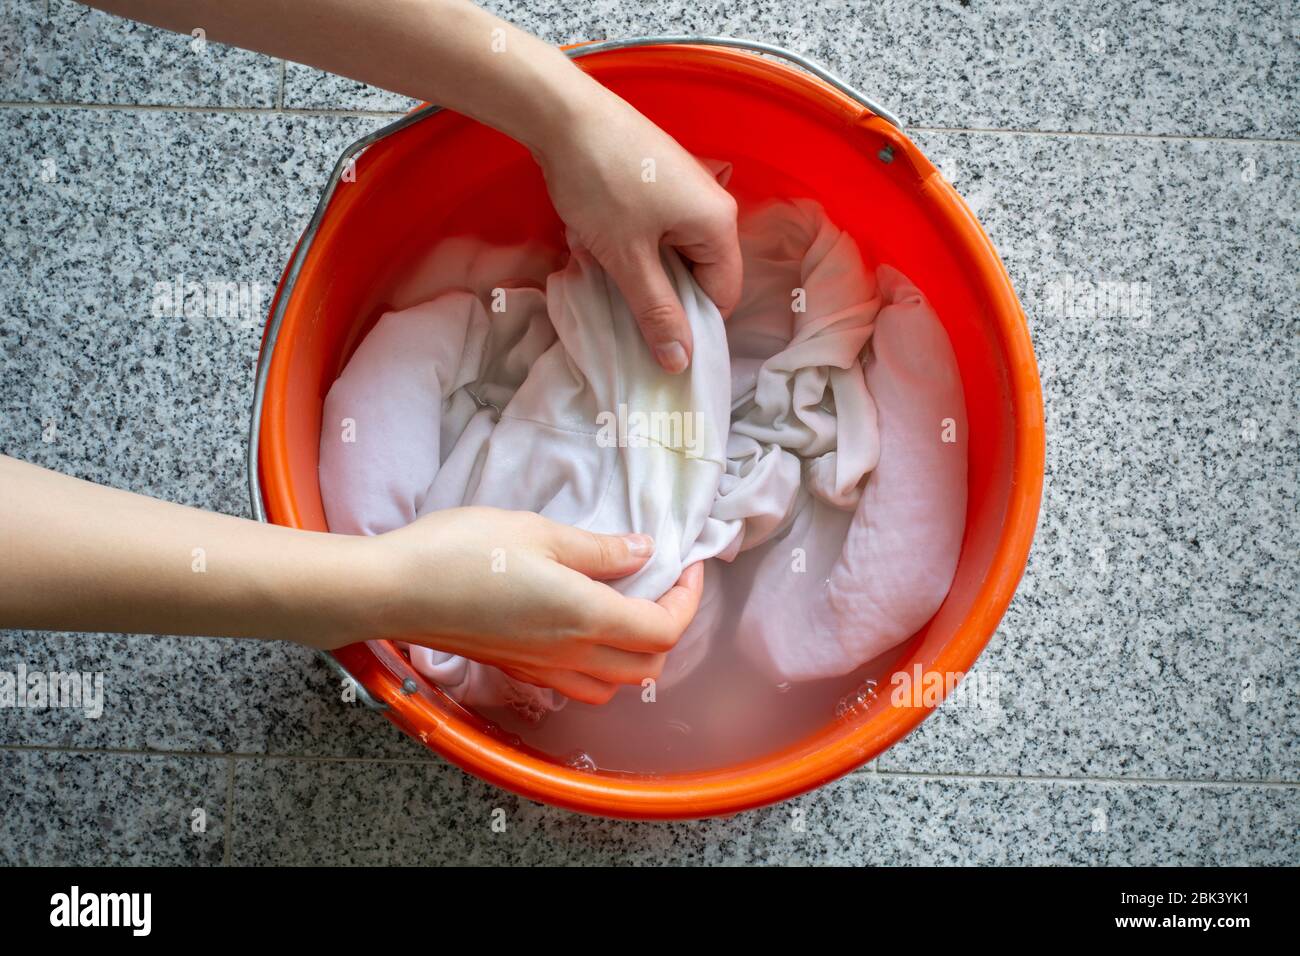 Limpieza manual de la colada. Las manos de las mujeres lavan camisas blancas sucias con manchas amarillas de sudor para remojarlas en un cubo Foto de stock